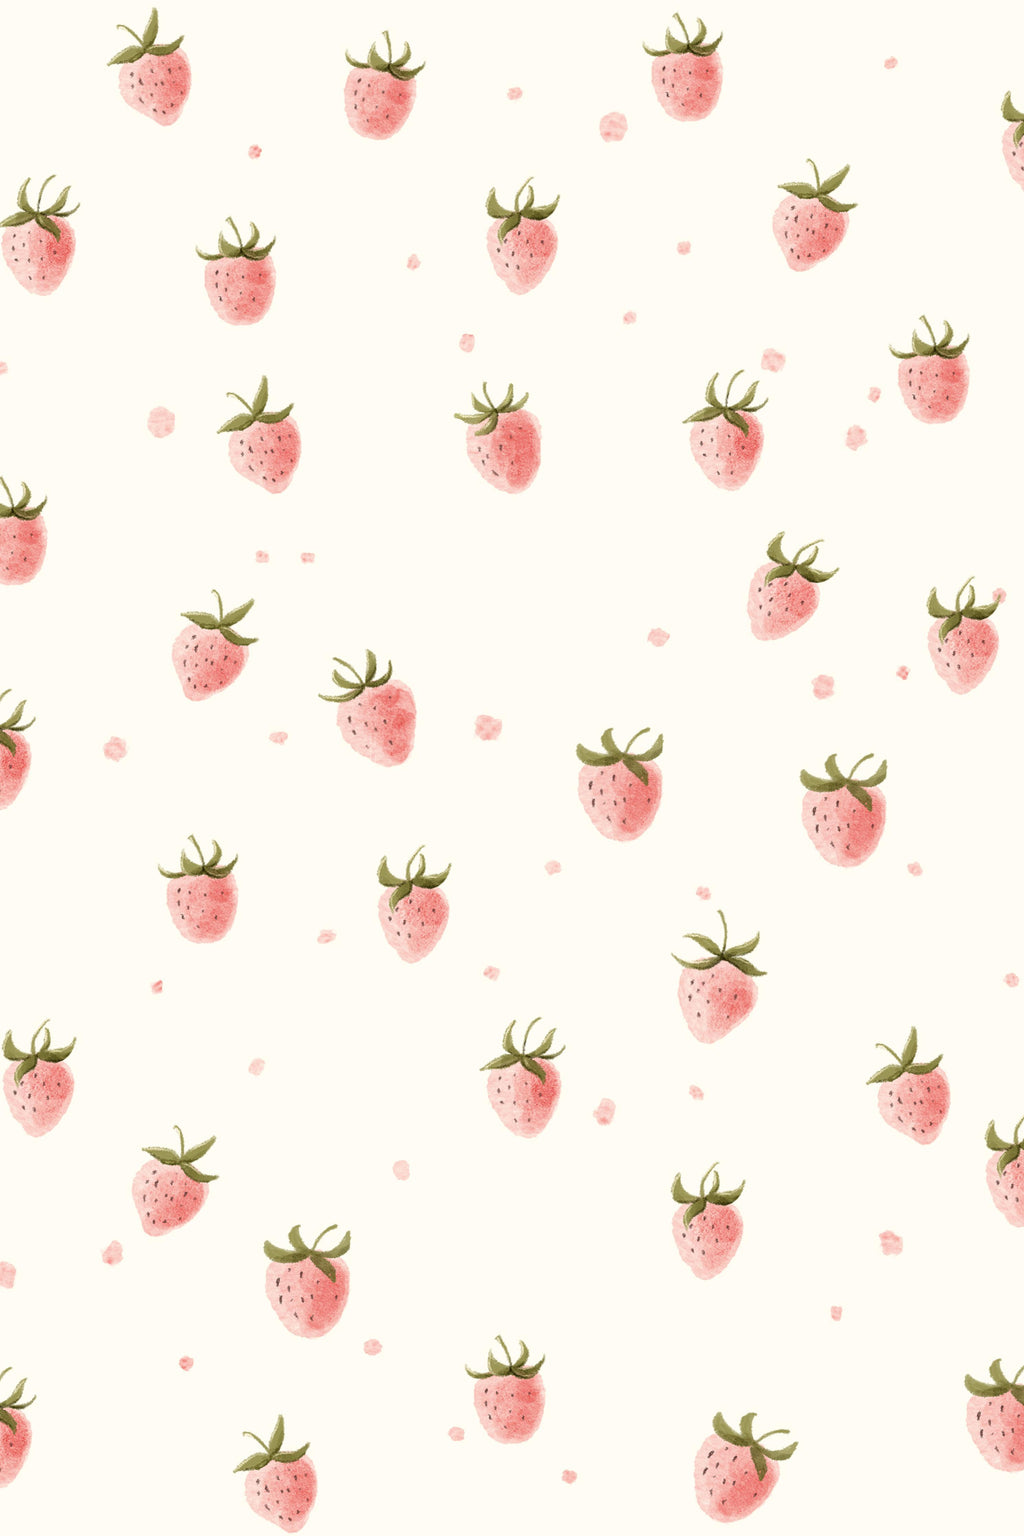 Wandbild-Rosa Erdbeeren - Grafik